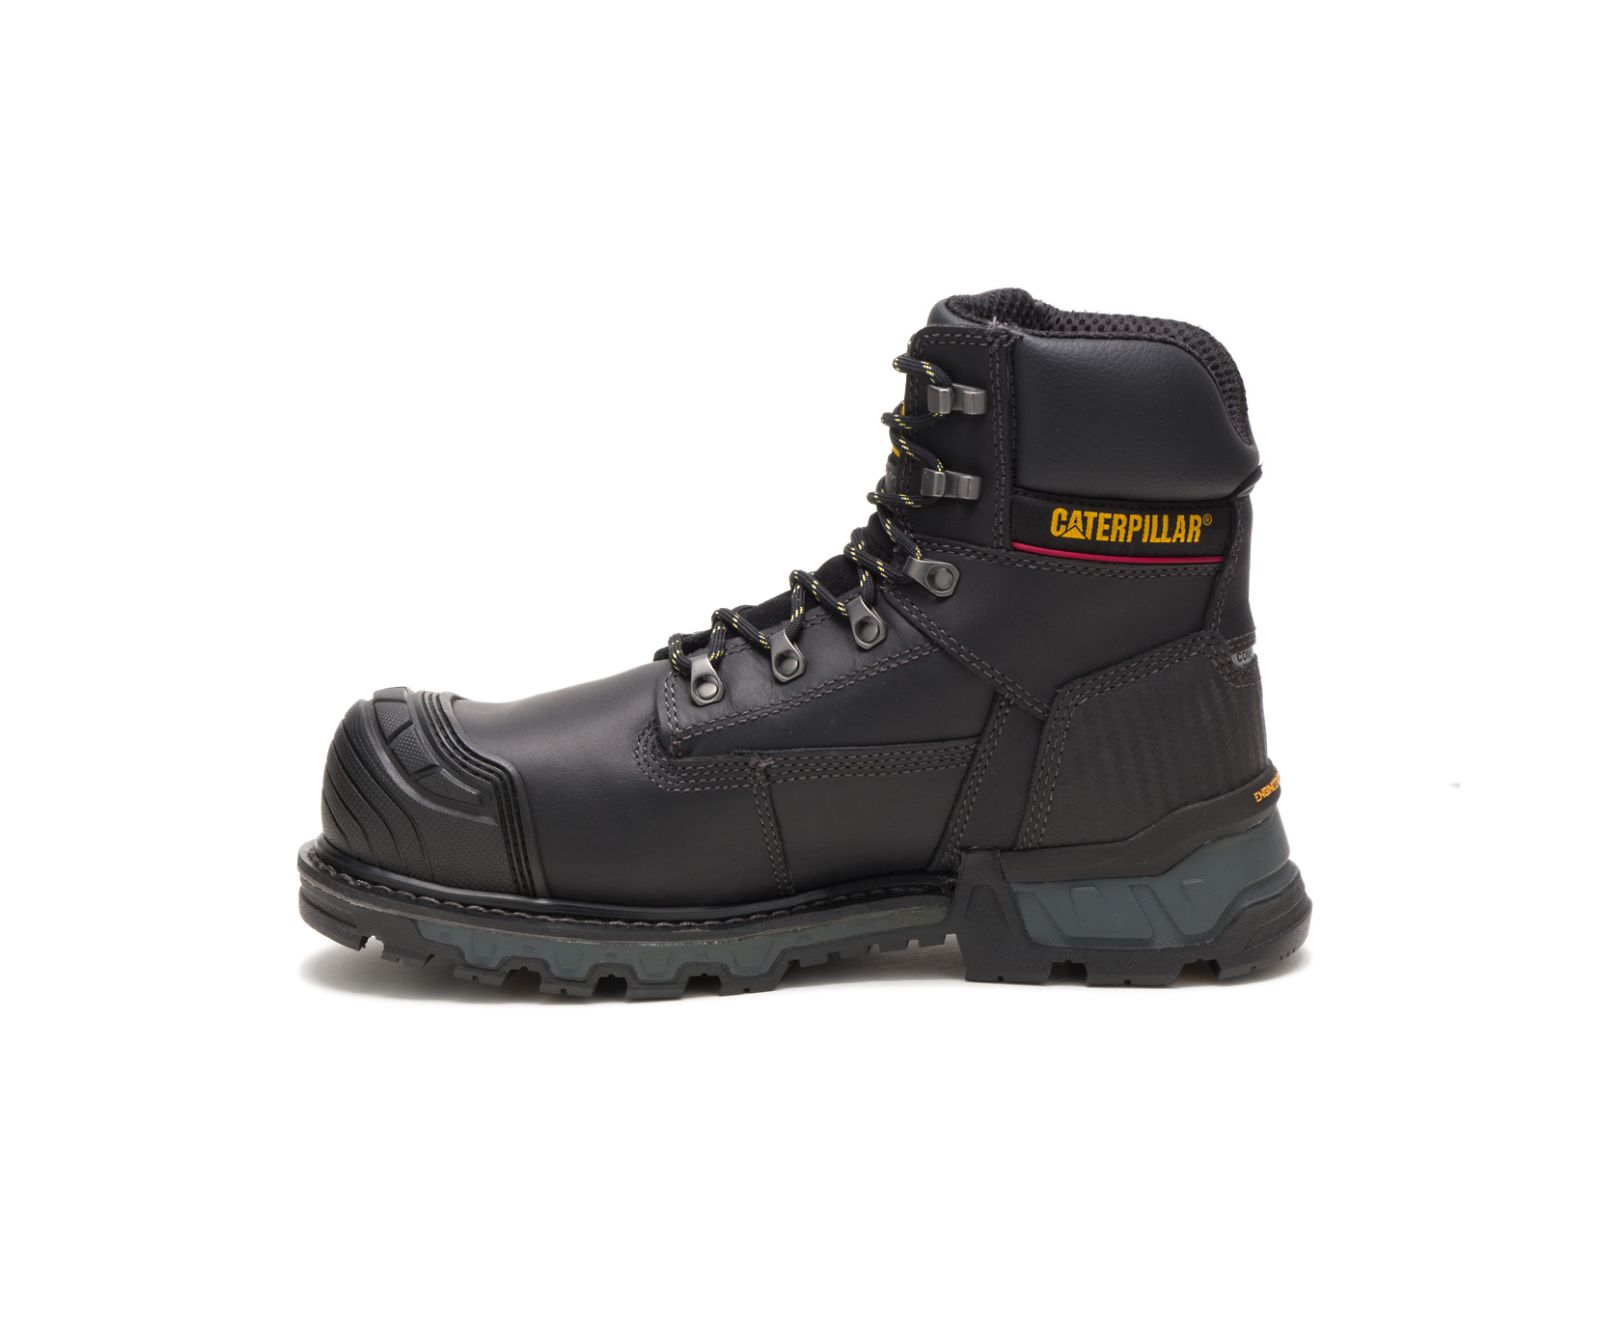 Excavator XL 6" Waterproof Composite Toe Work Boots